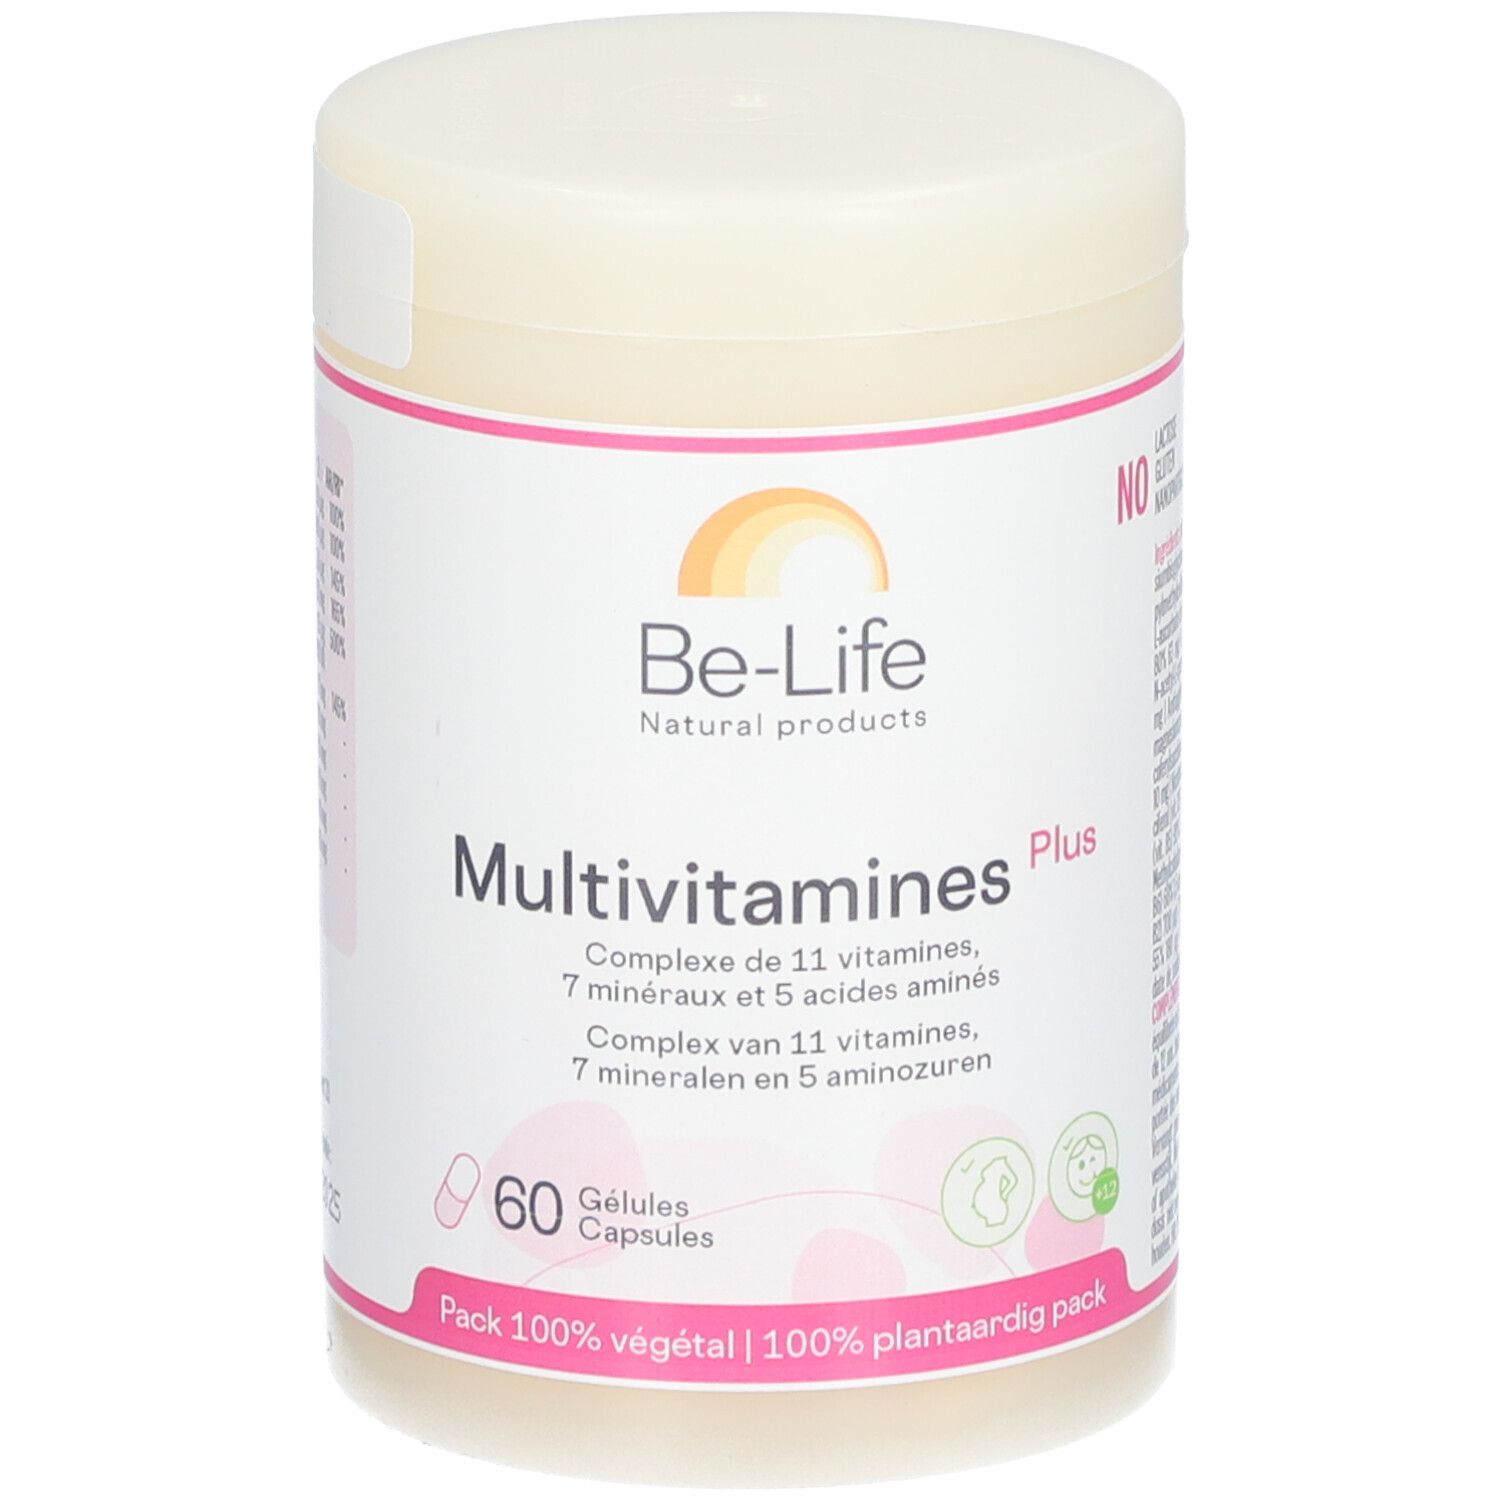 Be-Life Multivitamines Plus